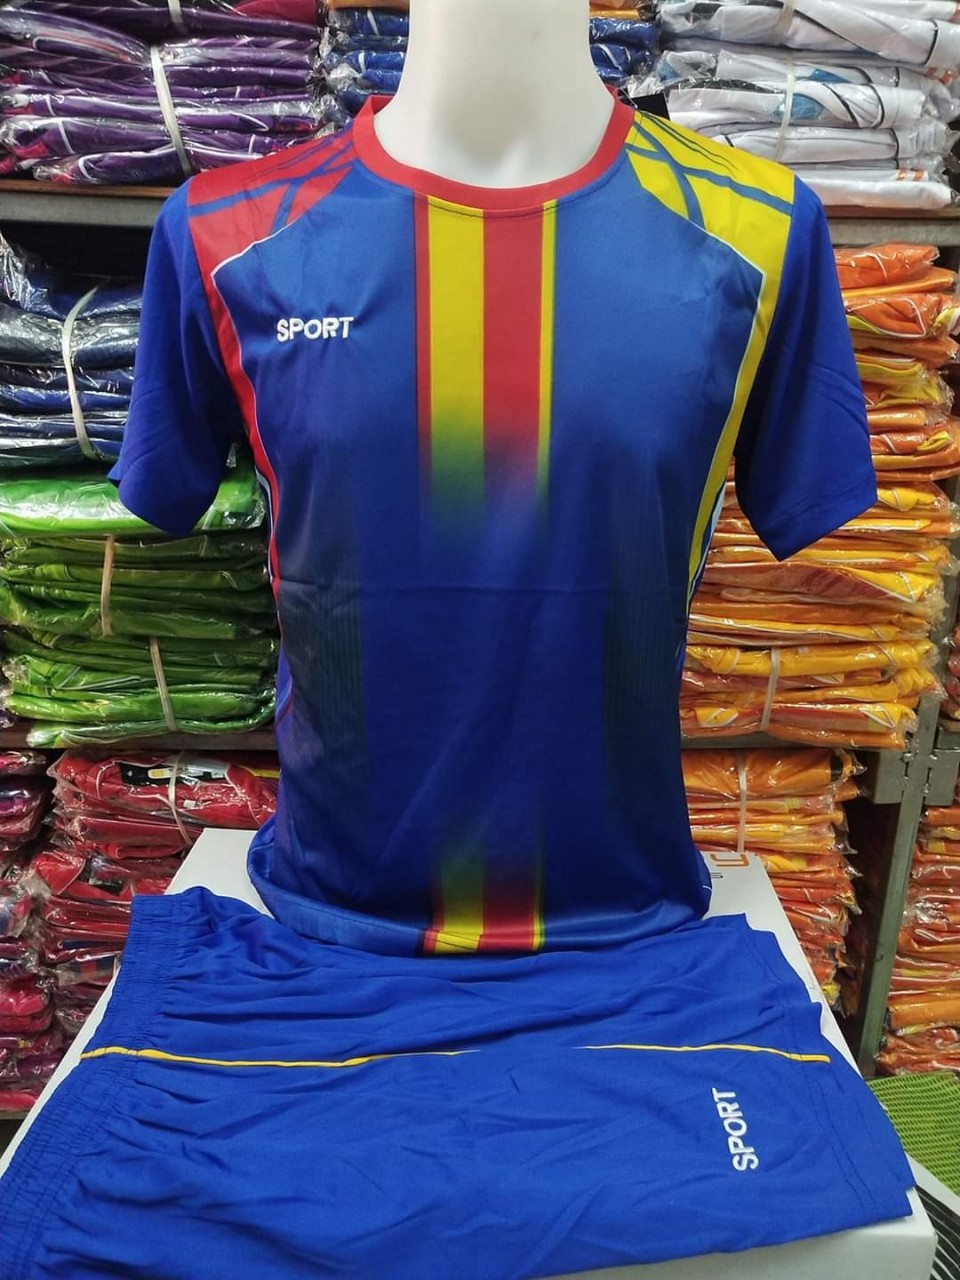 Tarit Shopชุดกีฬาใส่สบายลายเปลี่ยนใหม่ตลอดลายได้ไม่ตรงกับรูปที่ลงไว้  เสื้อกีฬาผู้ชายได้ทั้ง เสื้อ กางเกง ชุดกีฬาราคาถูก sport cloth sport wear Football suit